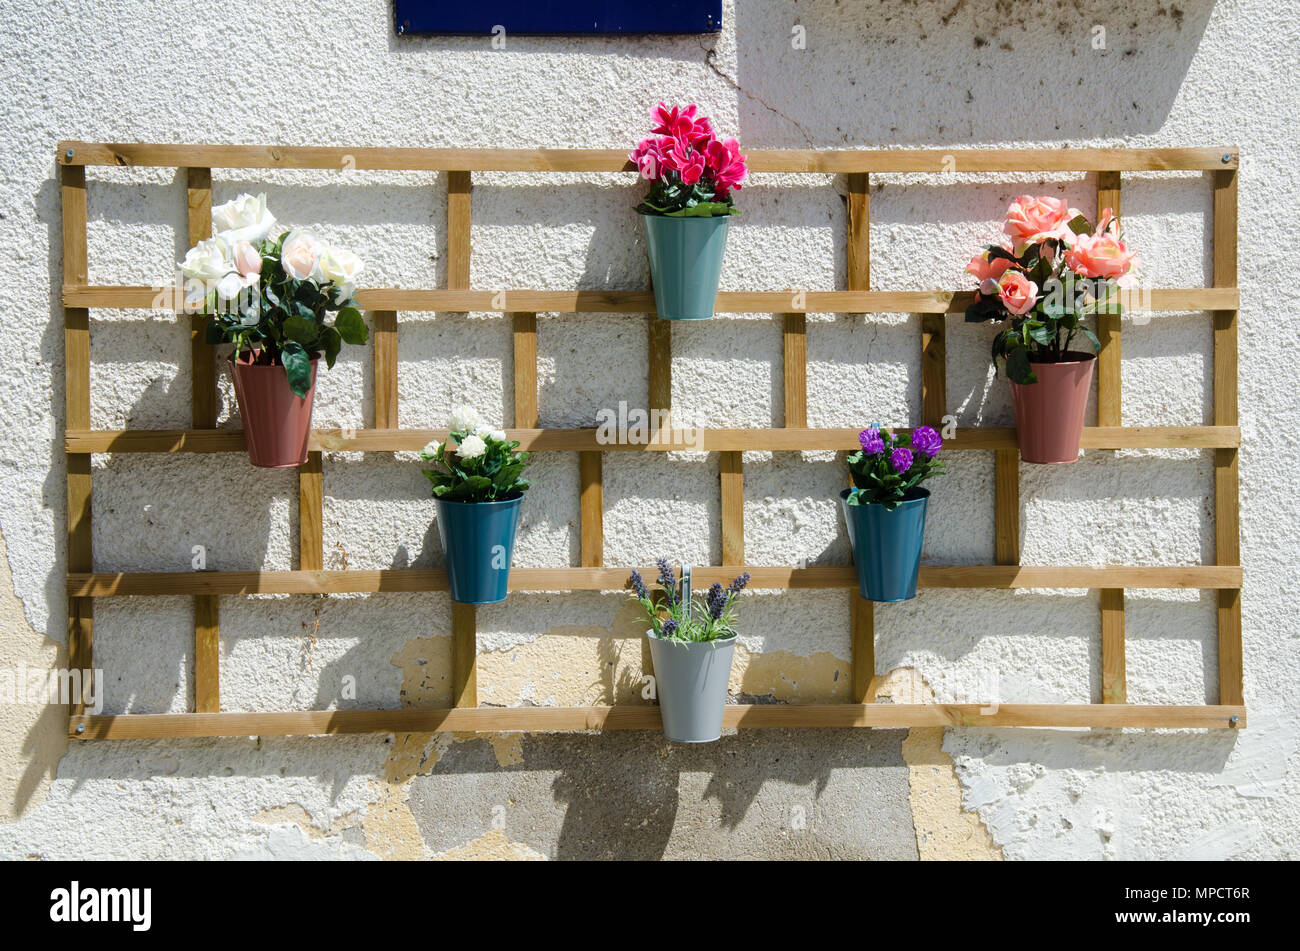 Interessante Holzregal für Blumentöpfe mit bunten Blumen, die auf der  weißen Wand des Hauses, Outdoor Dekoration Stockfotografie - Alamy